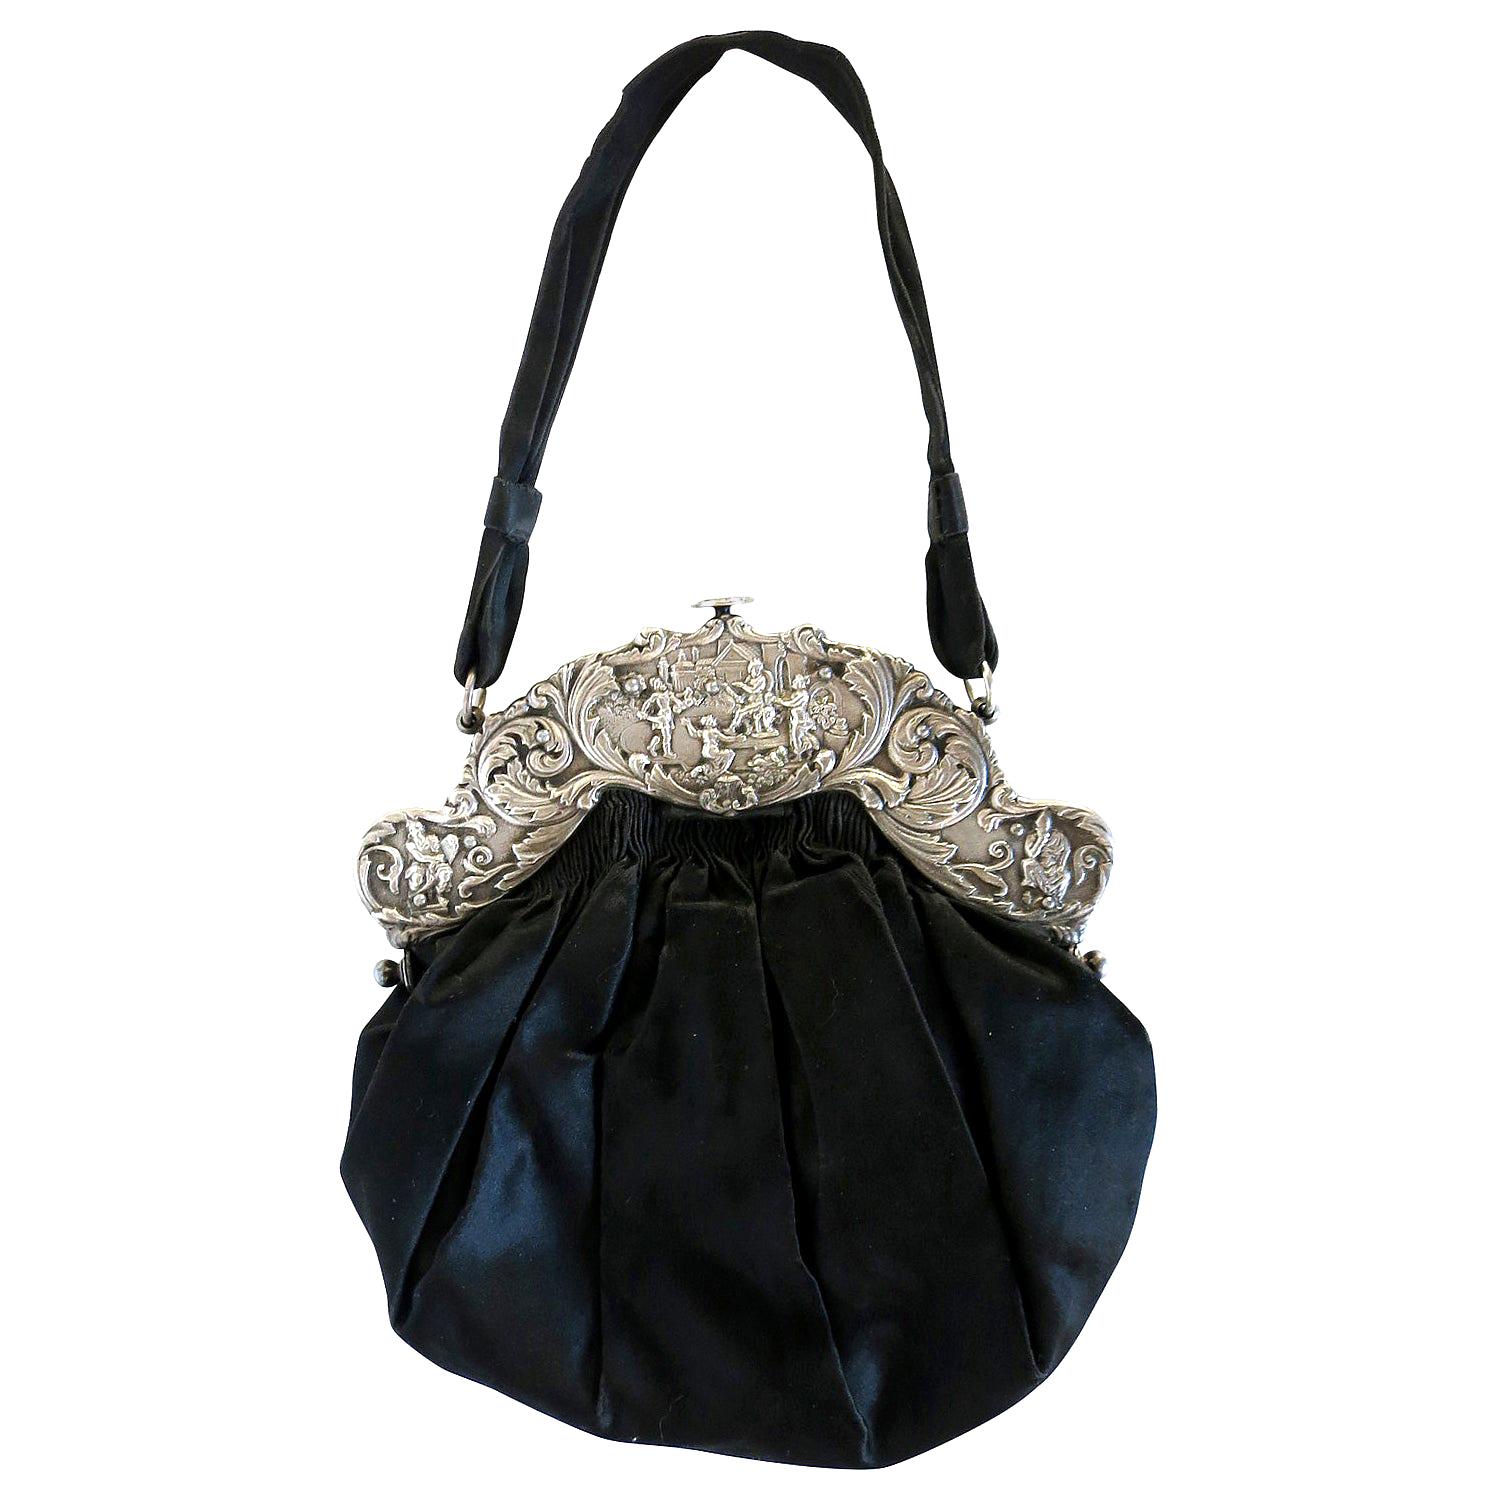 Viktorianische Handtasche mit großer dekorativer Sterling Silber Schließe